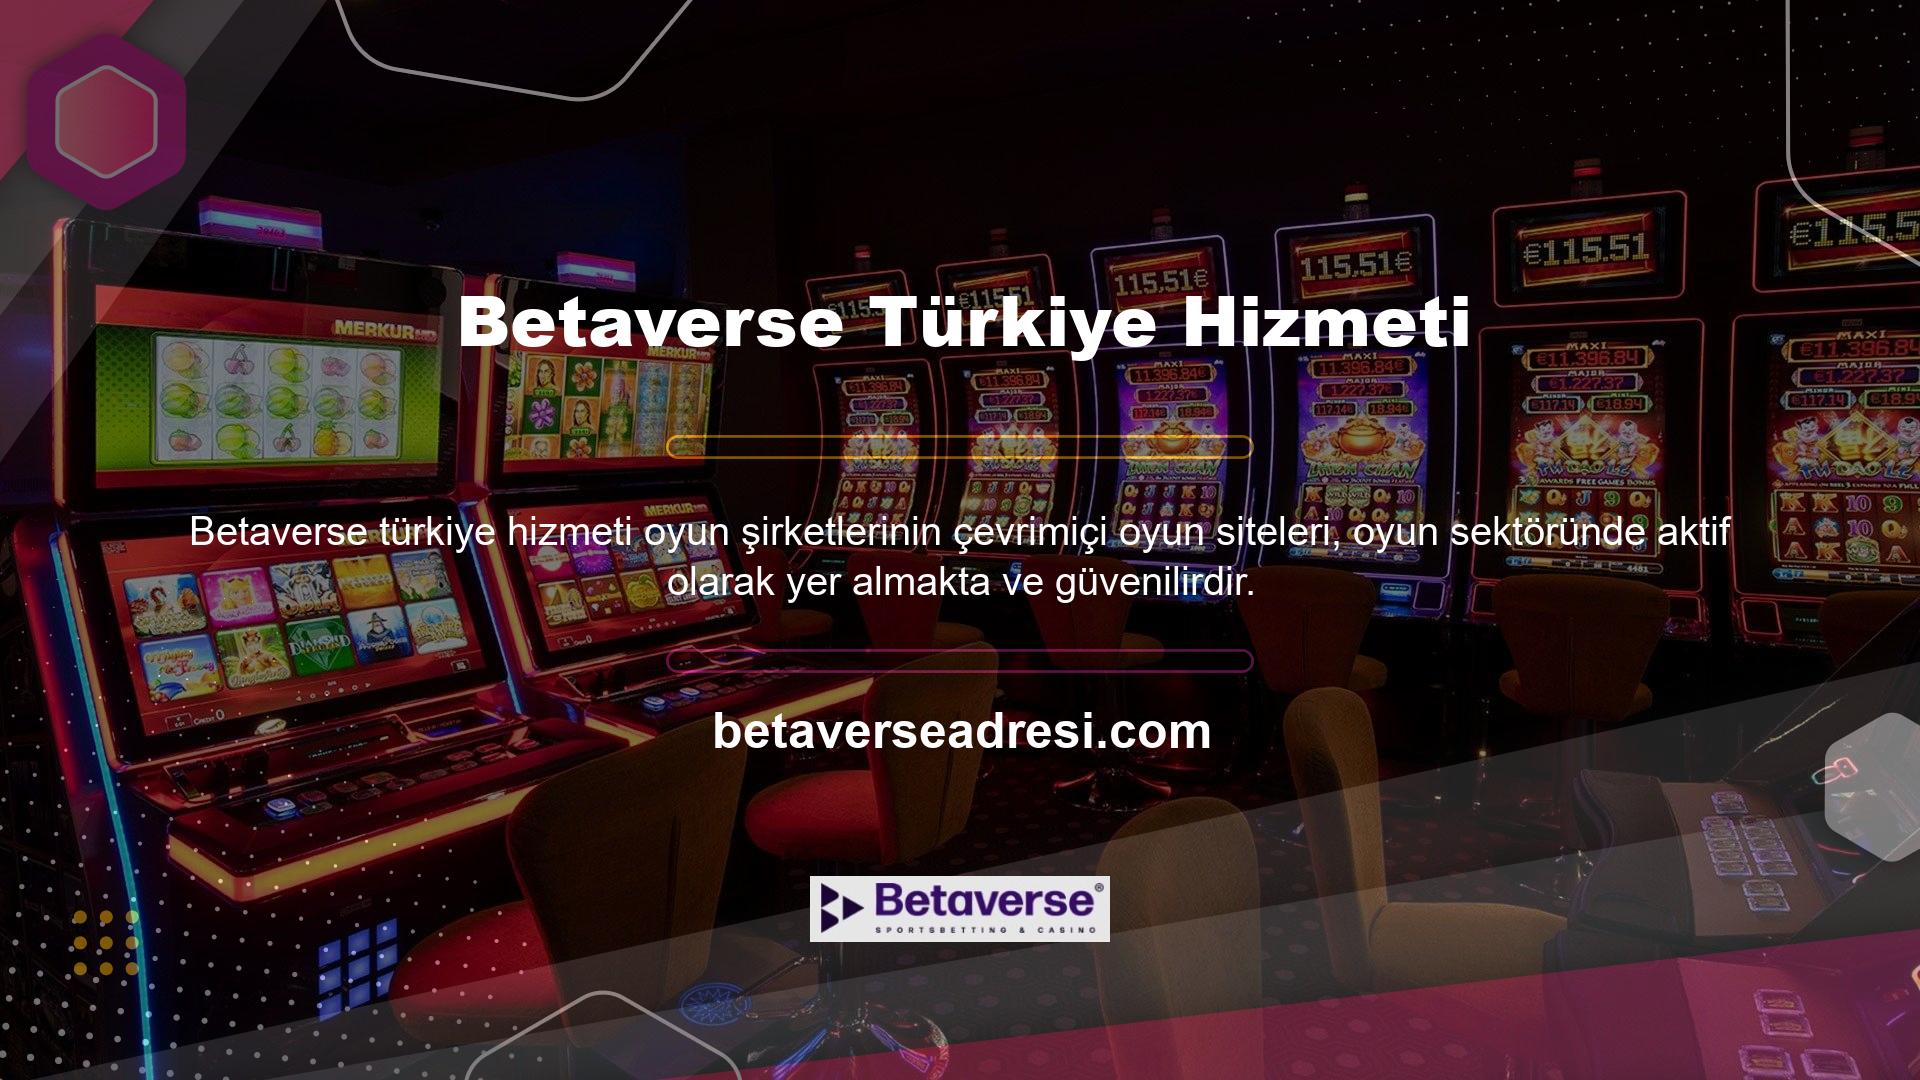 Şirket, Amerika Birleşik Devletleri pazarının yanı sıra Türkiye oyun pazarına da giriş yaptı